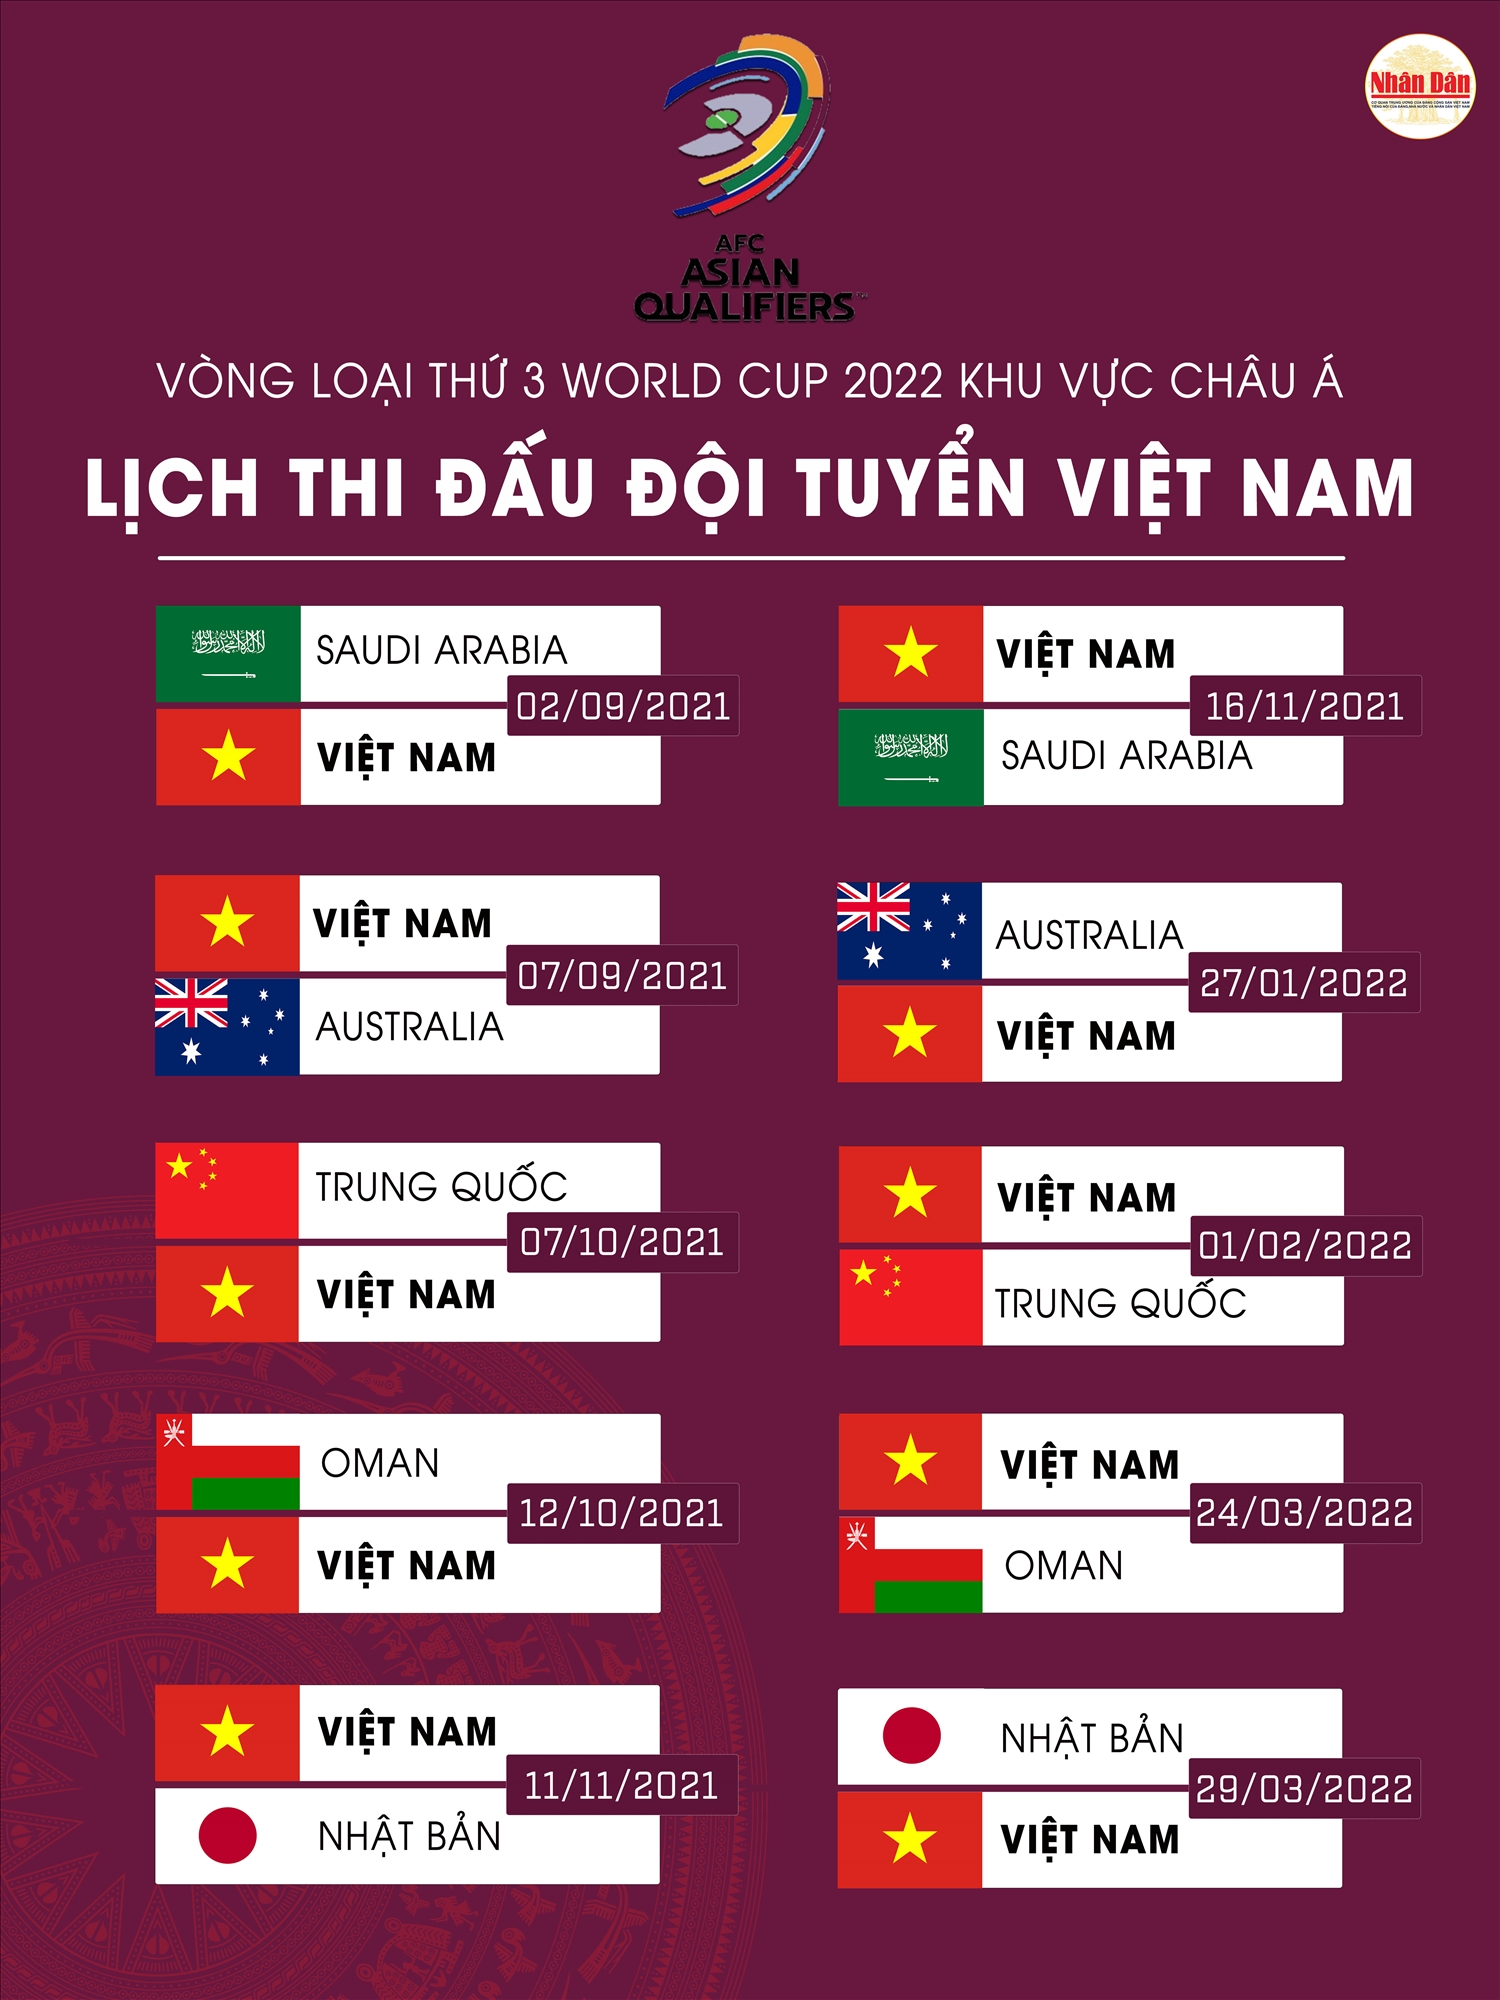 Lịch thi đấu dự kiến của đội tuyển Việt Nam